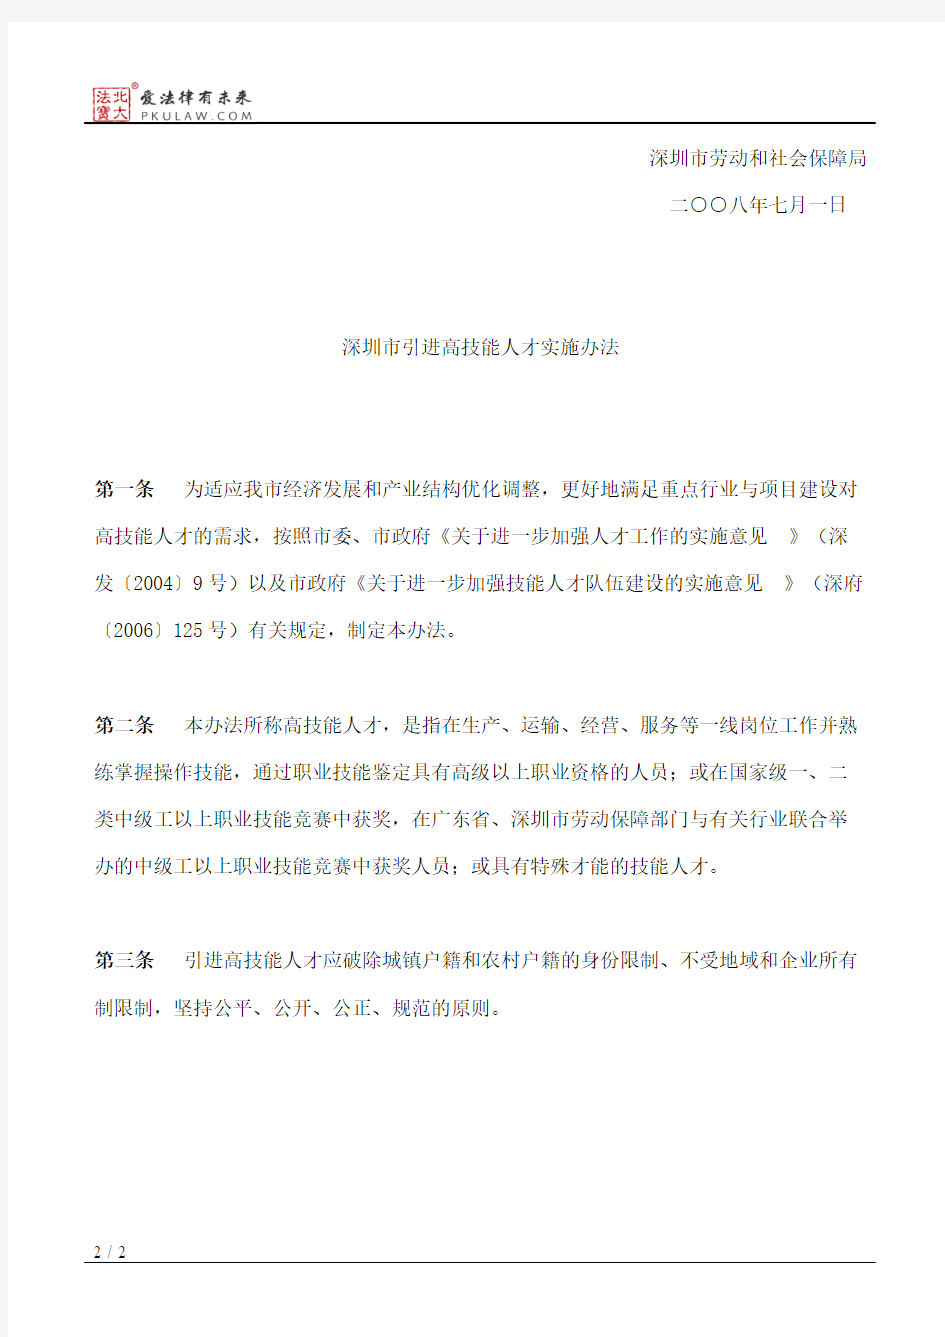 深圳市劳动和社会保障局关于发布《深圳市引进高技能人才实施办法